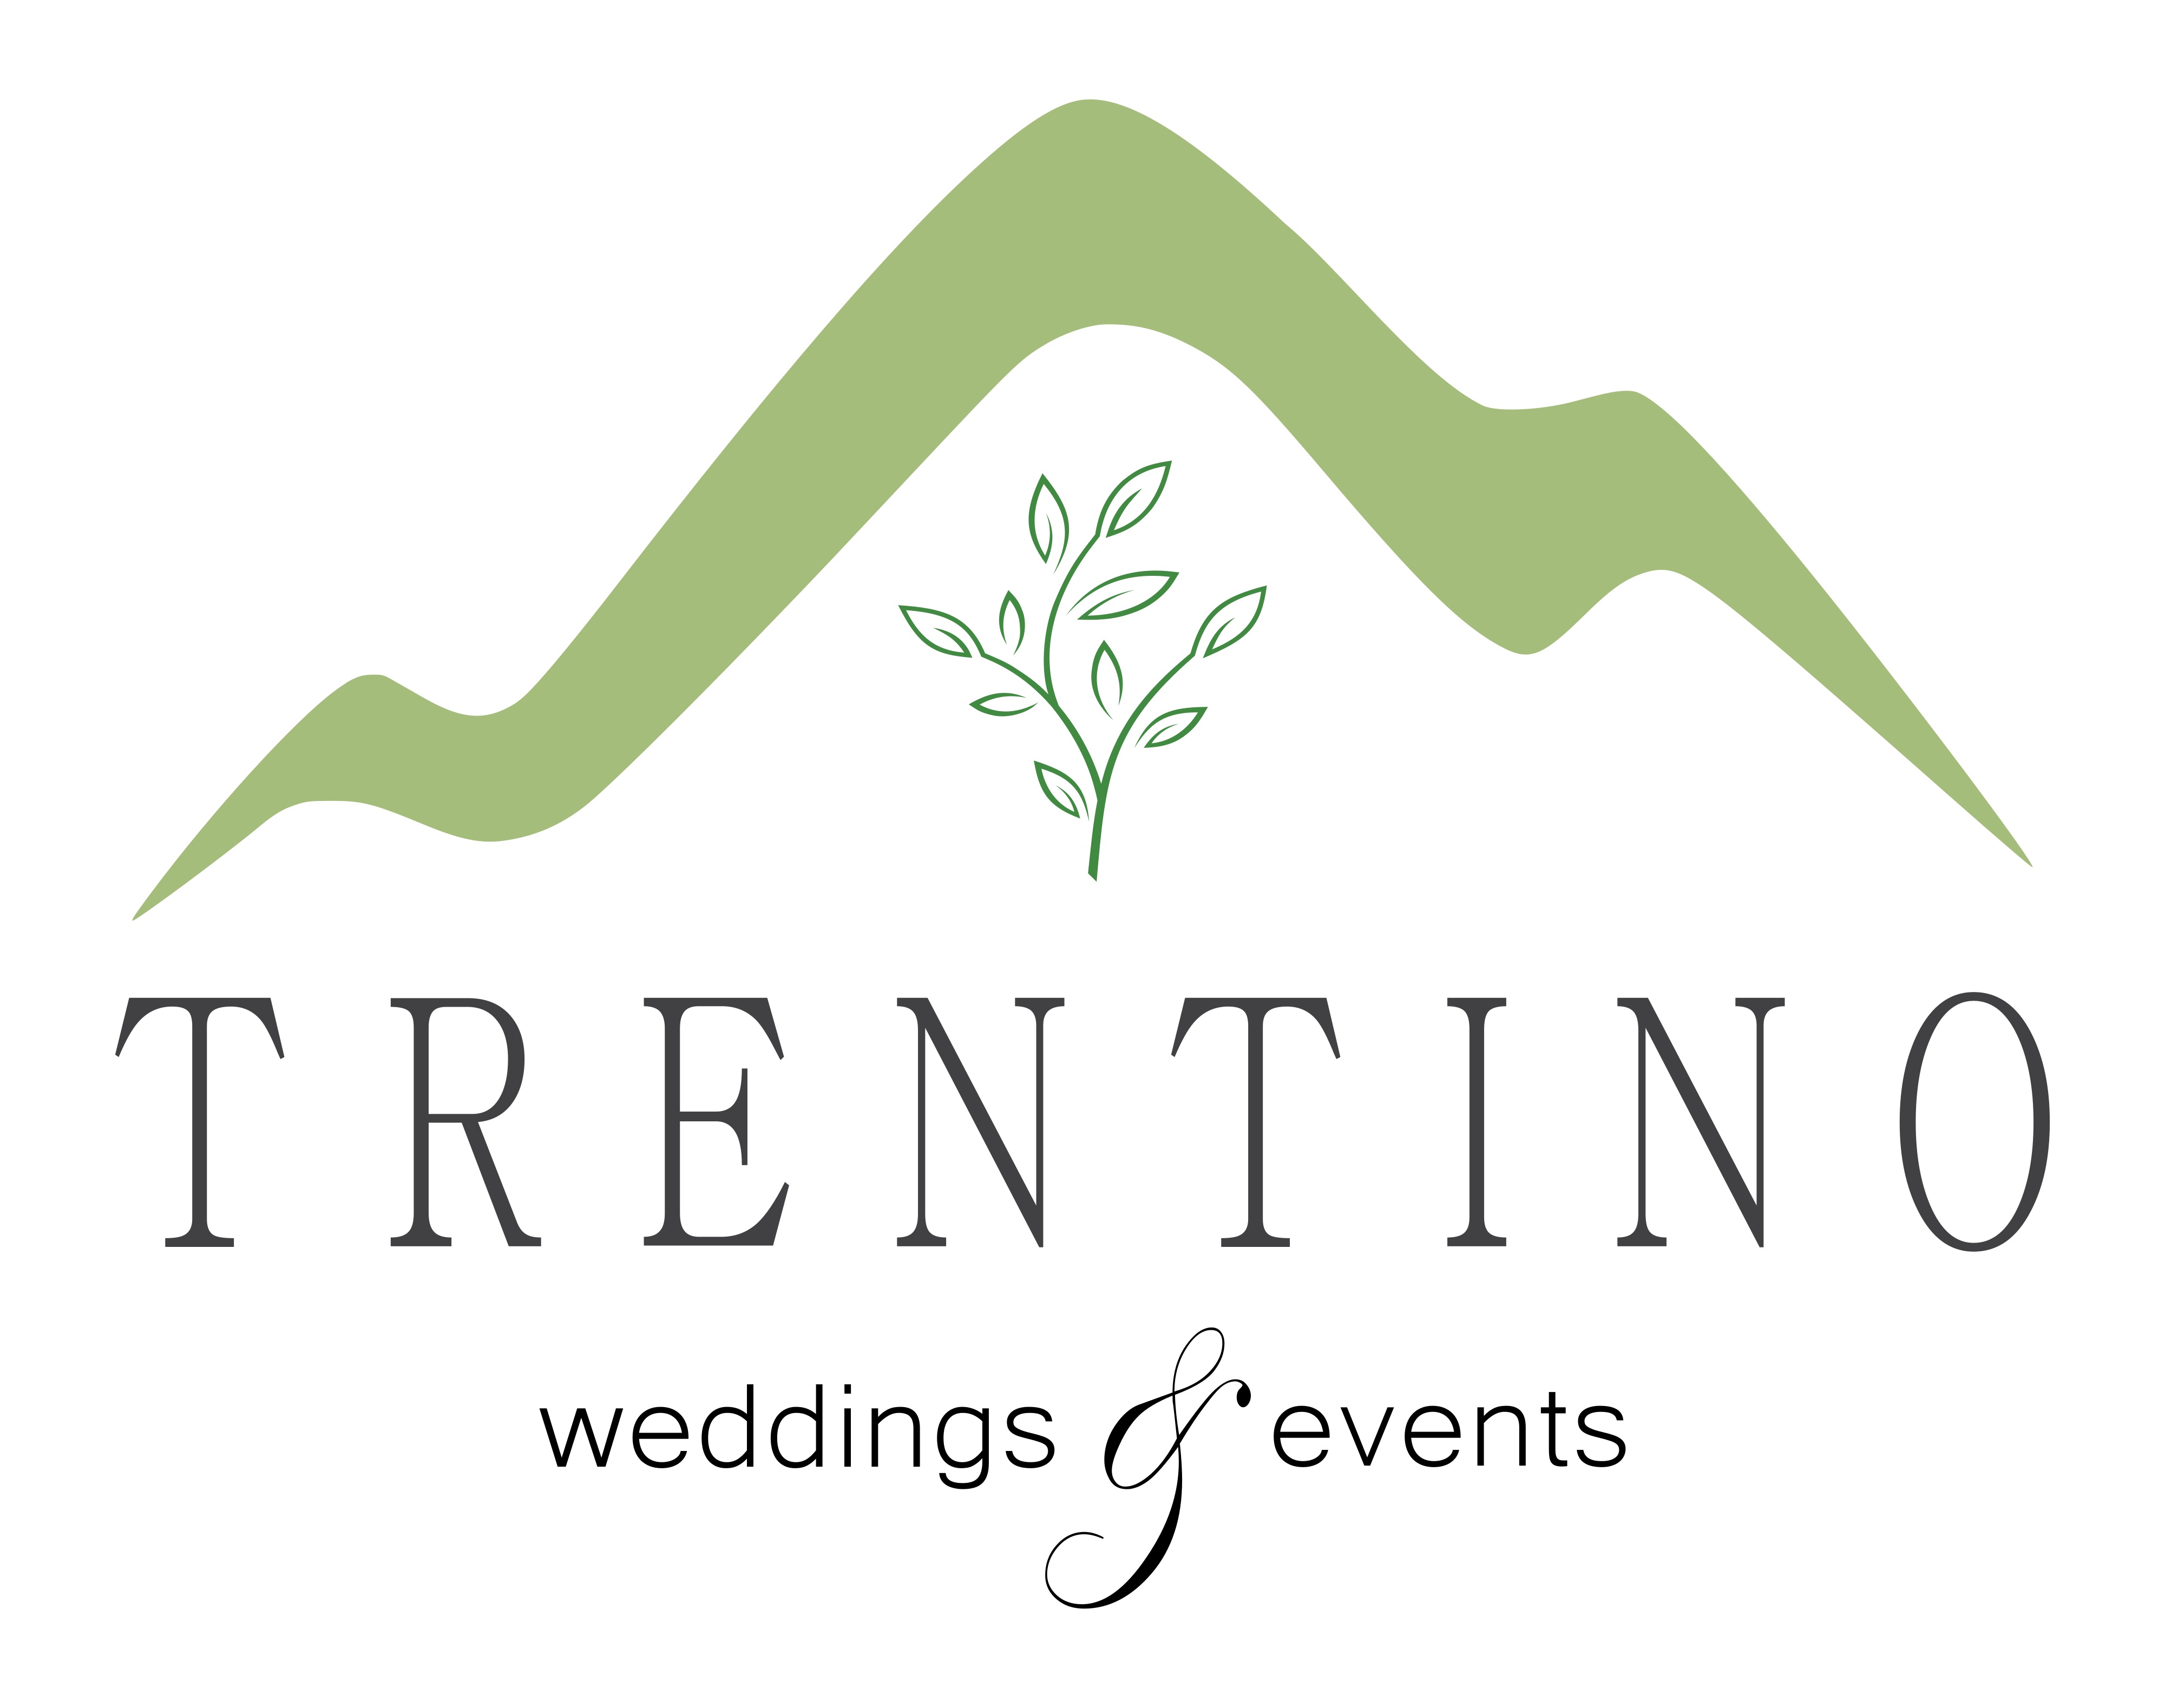 Trentino Weddings & Events